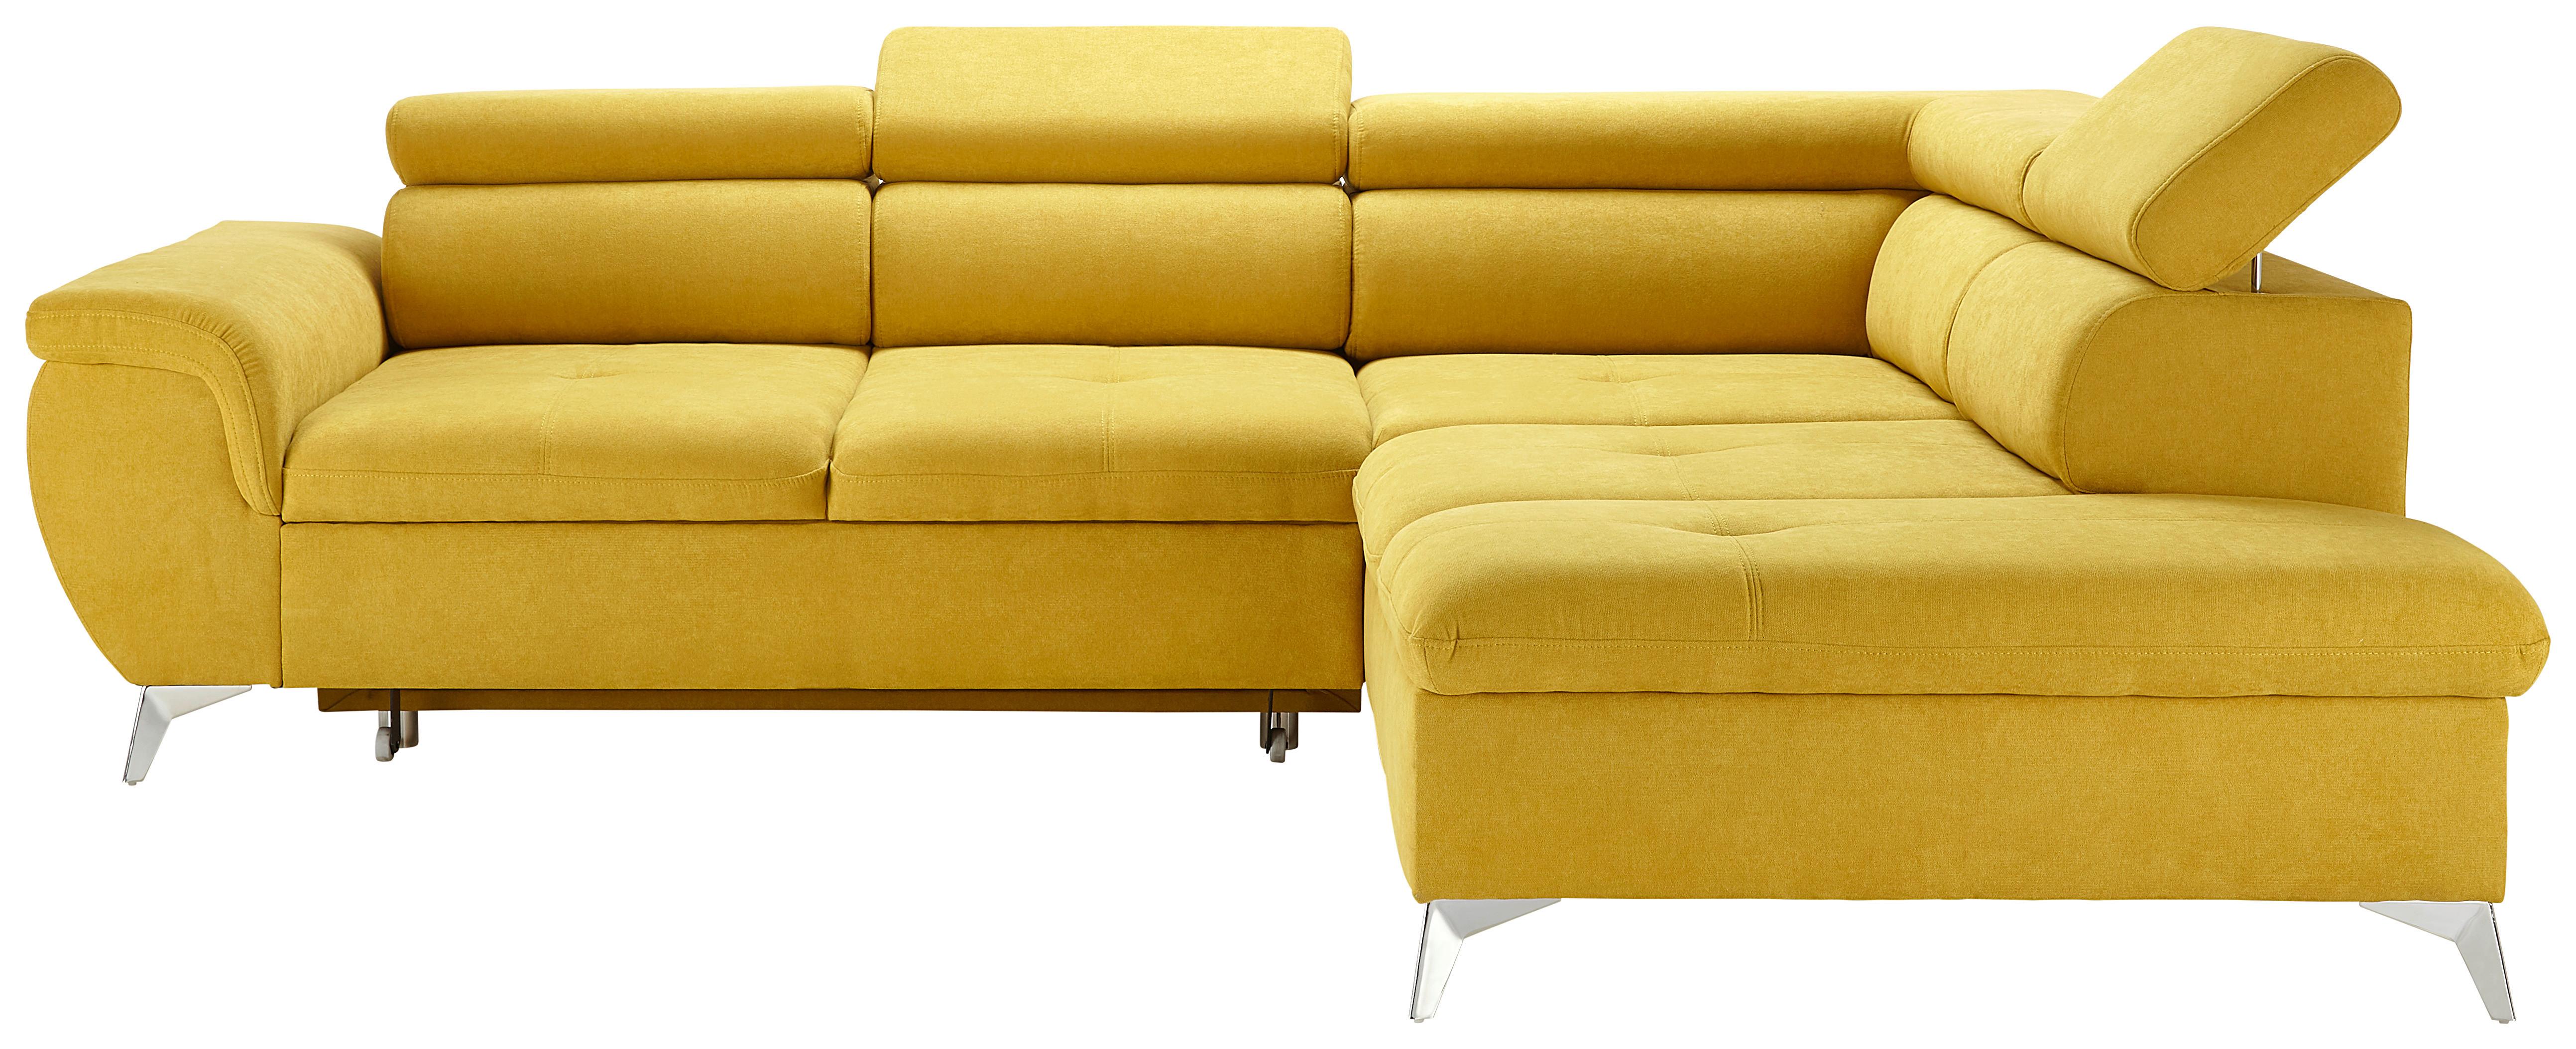 Sedežna Garnitura Monk , Z Ležiščem In Predalom - rumena/srebrne barve, Konvencionalno, kovina/tekstil (273/101/213cm) - Premium Living